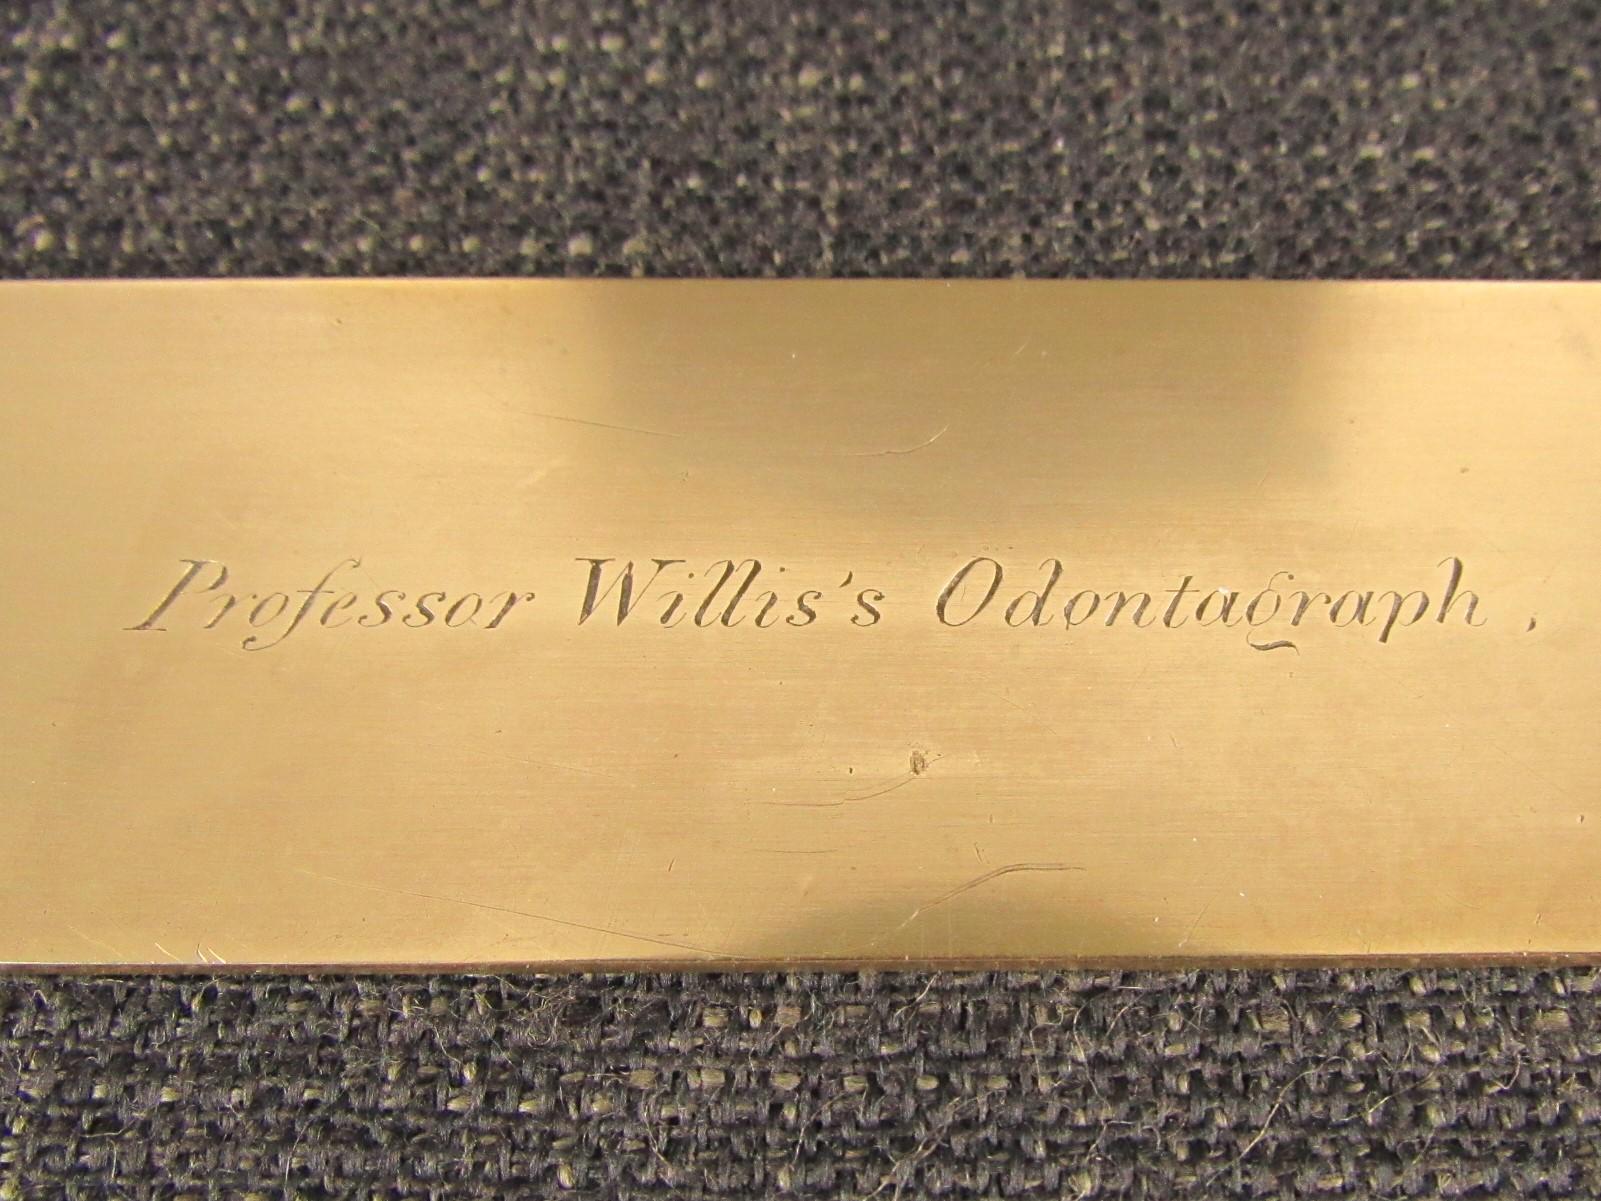 Professor Willis's Odontagraph by HOLTZAPFFEL - Odontograph